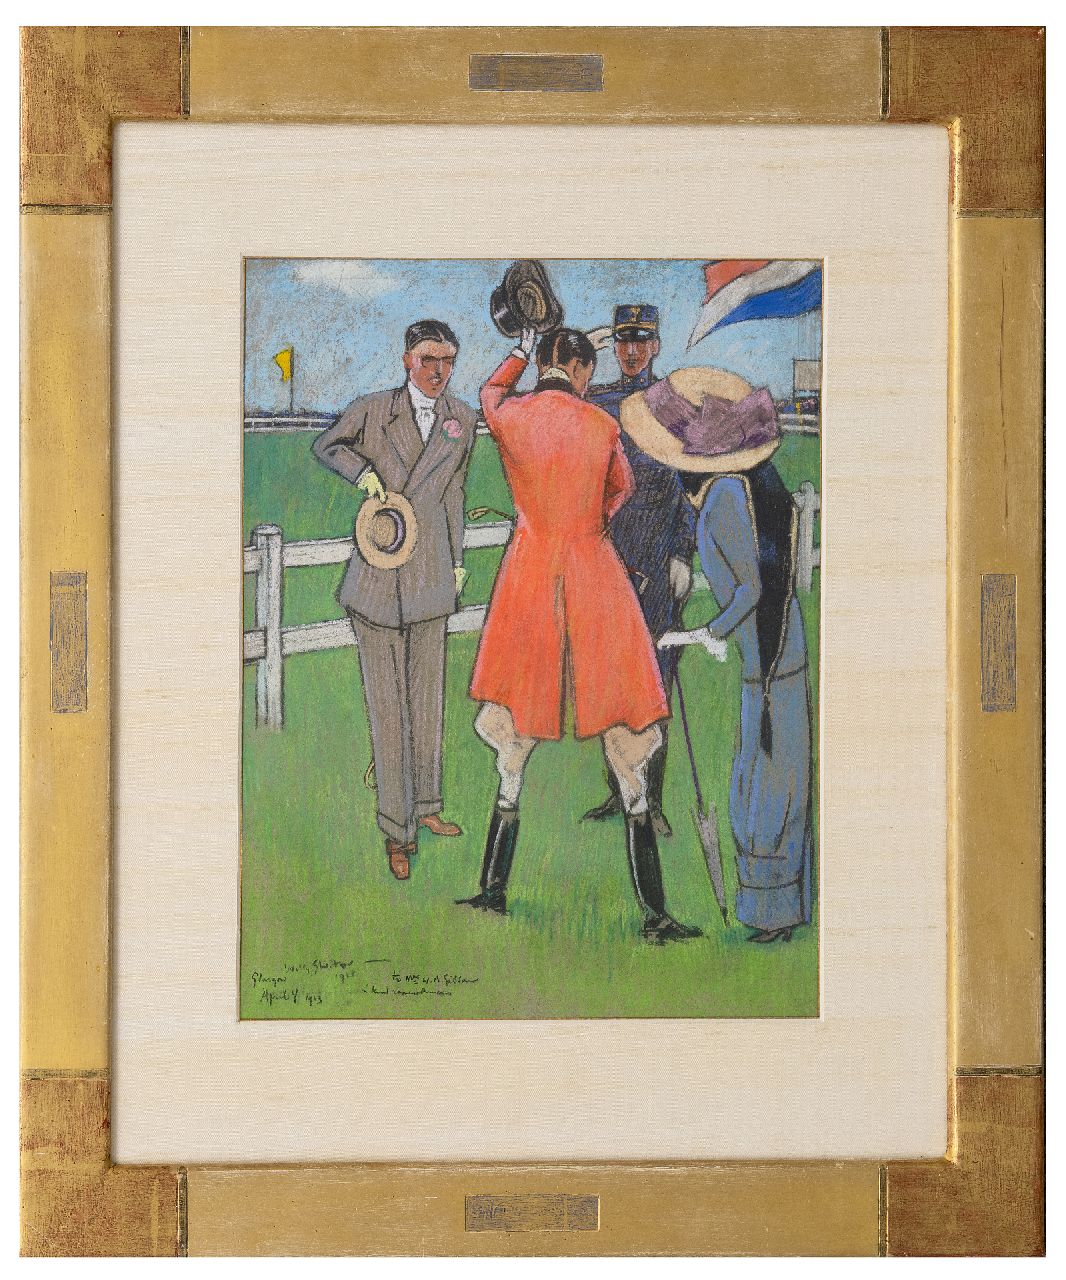 Sluiter J.W.  | Jan Willem 'Willy' Sluiter, Auf der Rennbahn, Pastell auf Papier 40,5 x 32,0 cm, Unterzeichnet u.l. und datiert April 4 1911